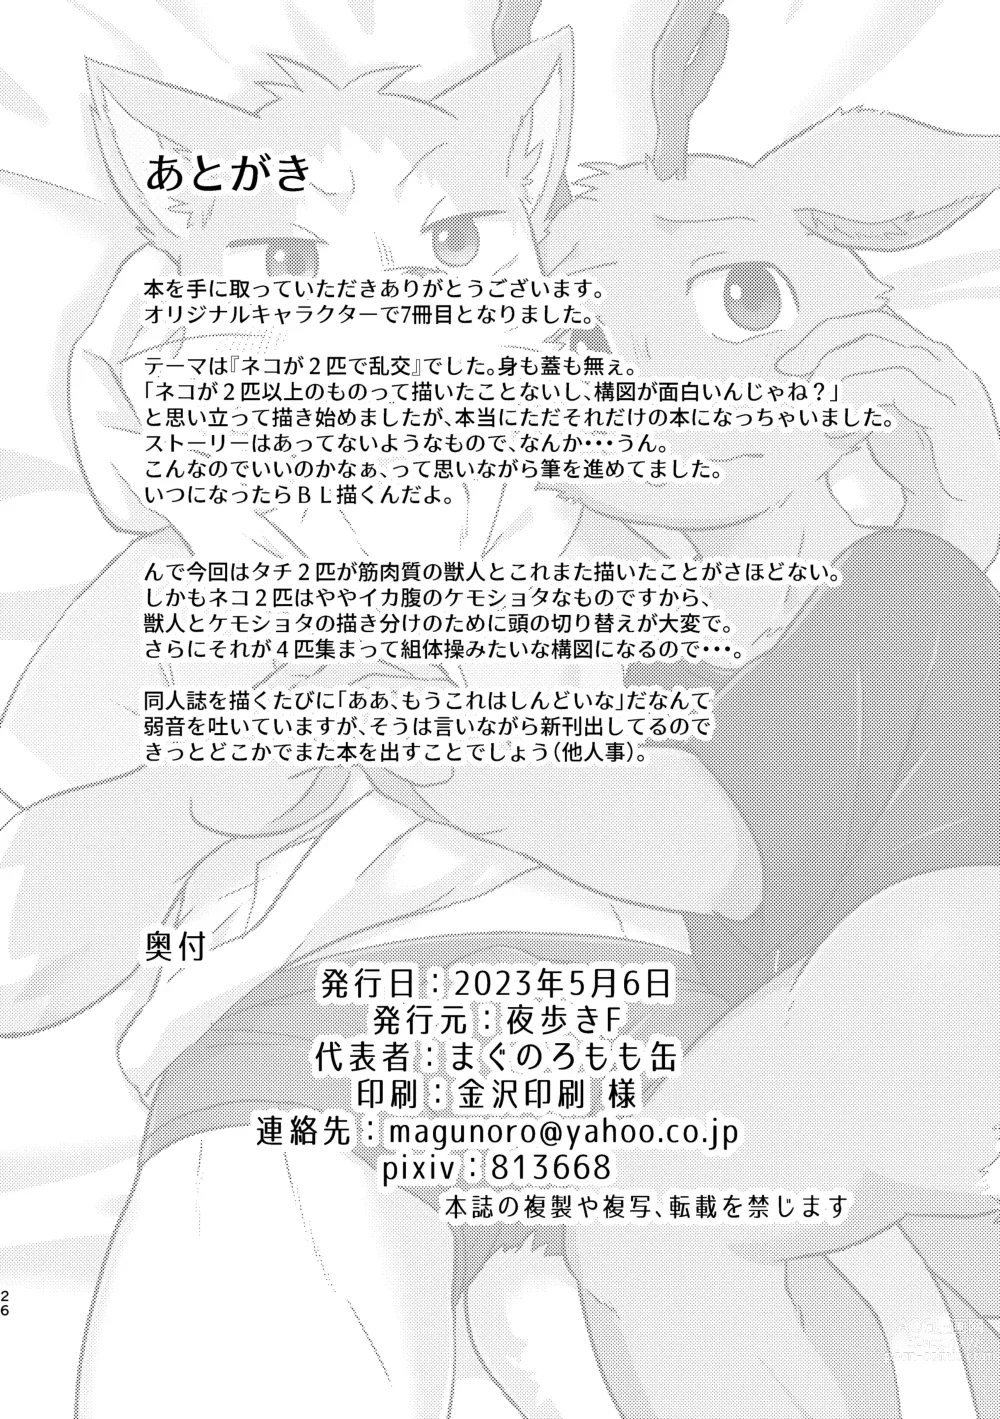 Page 50 of doujinshi Boku-Tachi Futari wa Neko shitai!